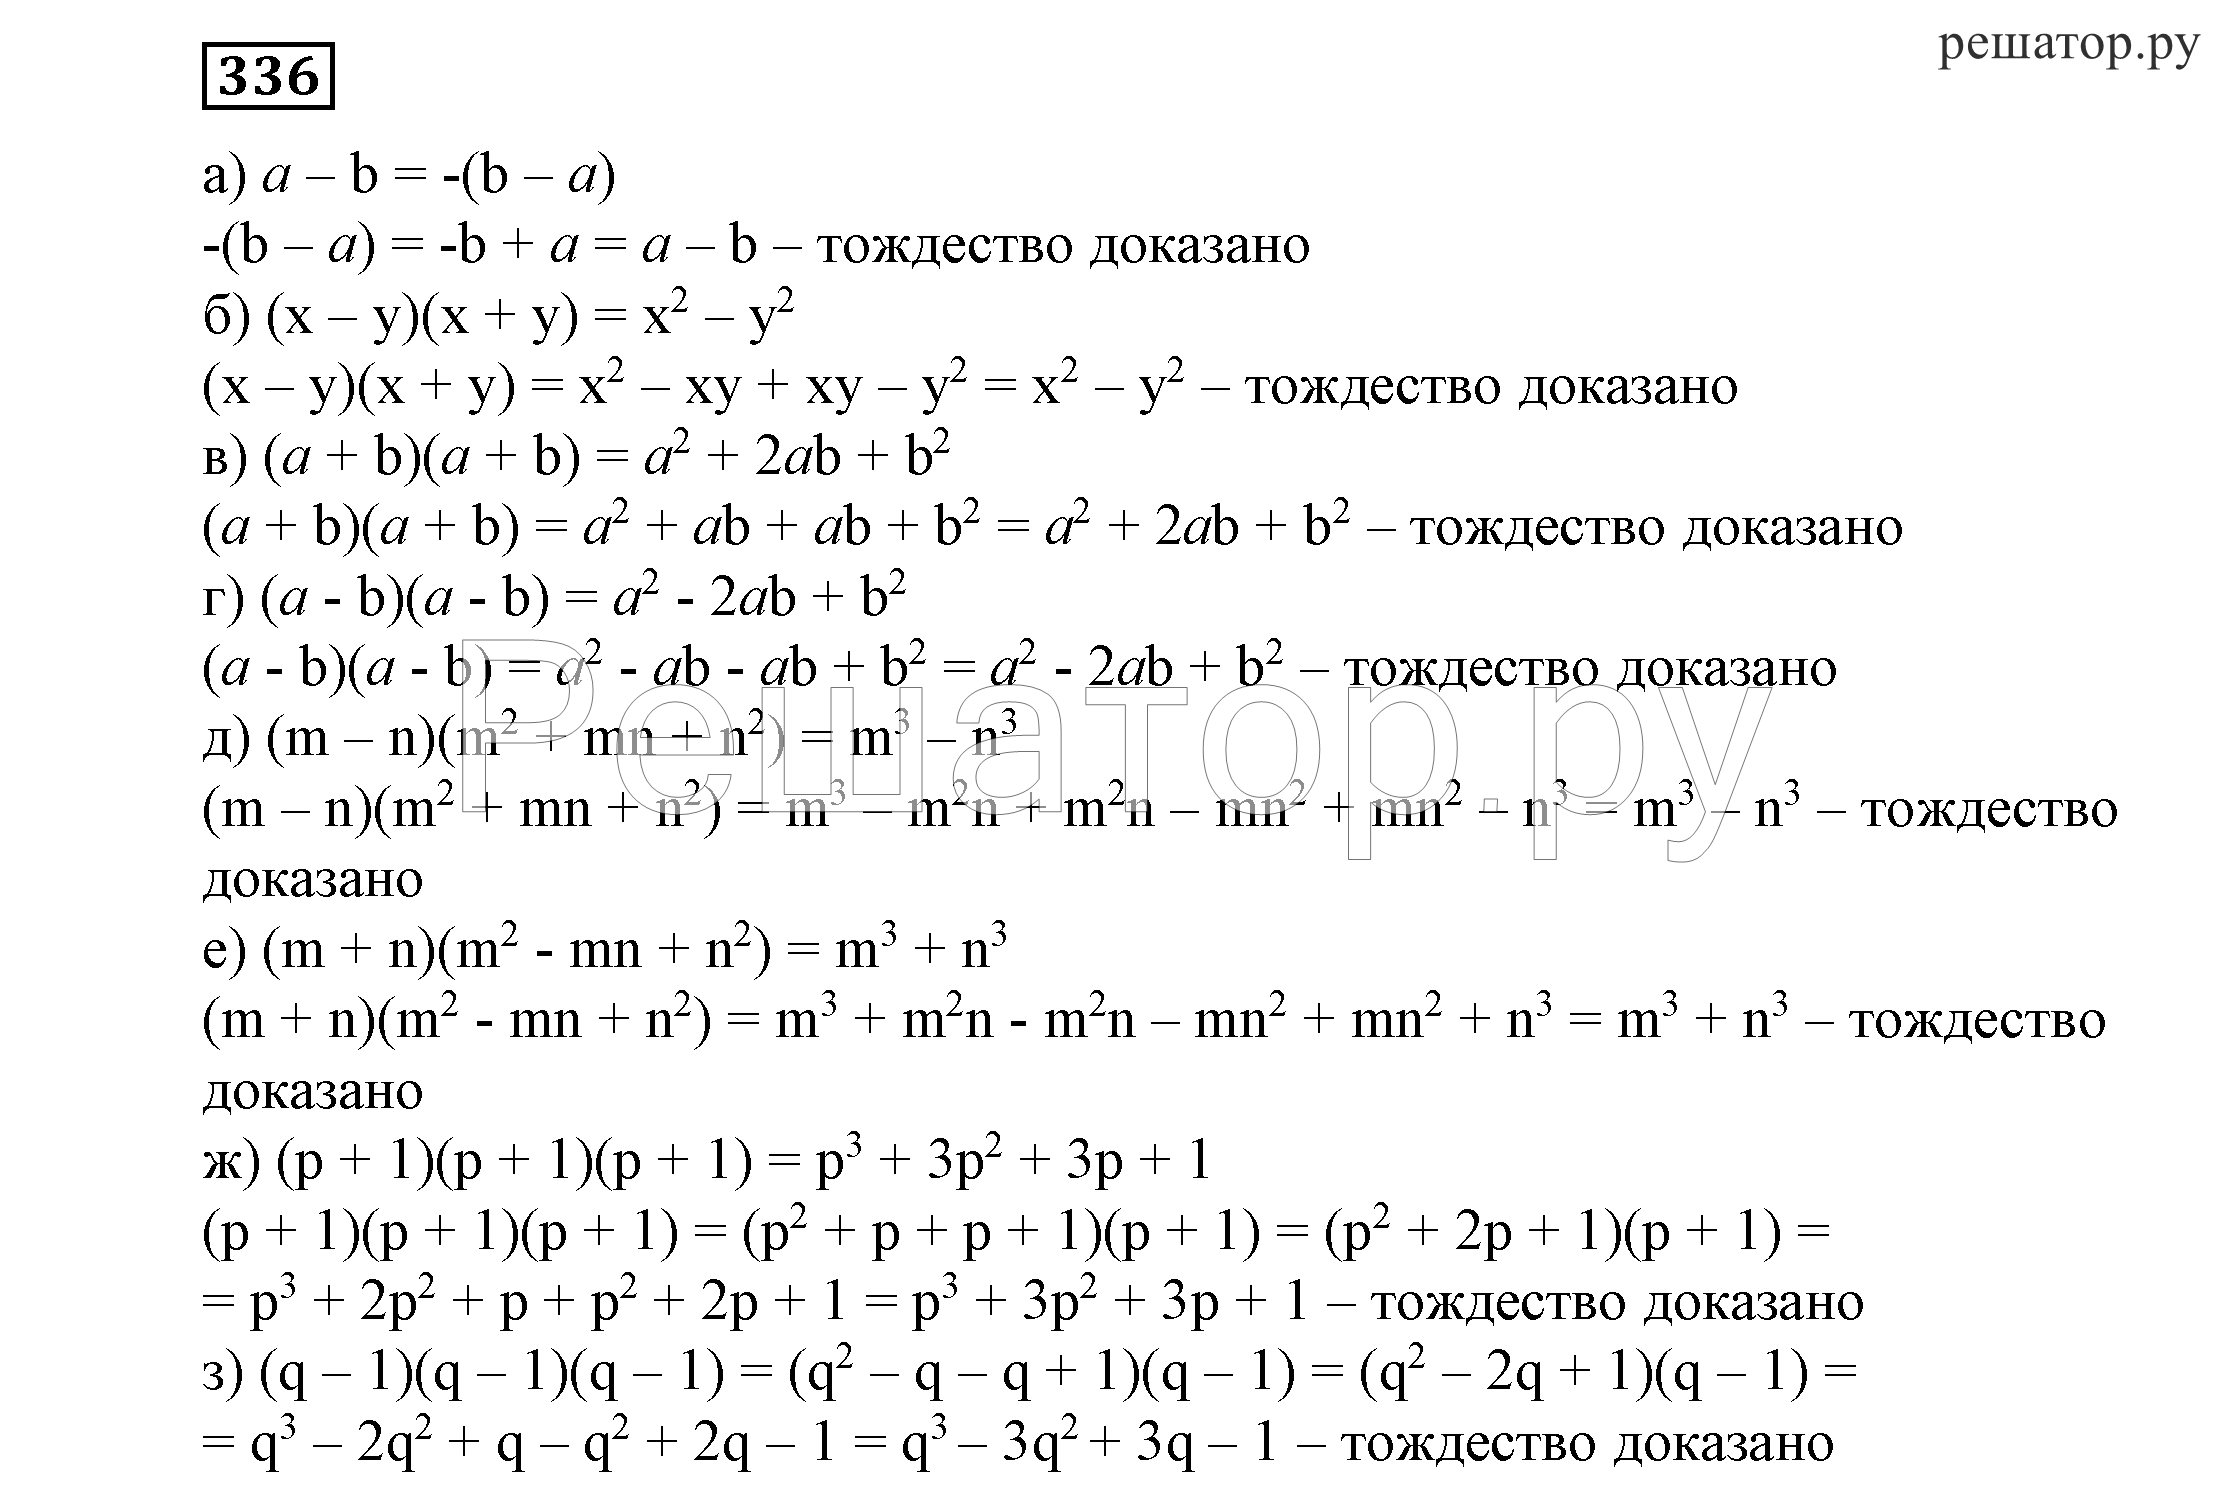 Никольский потапов решетников шевкин 7